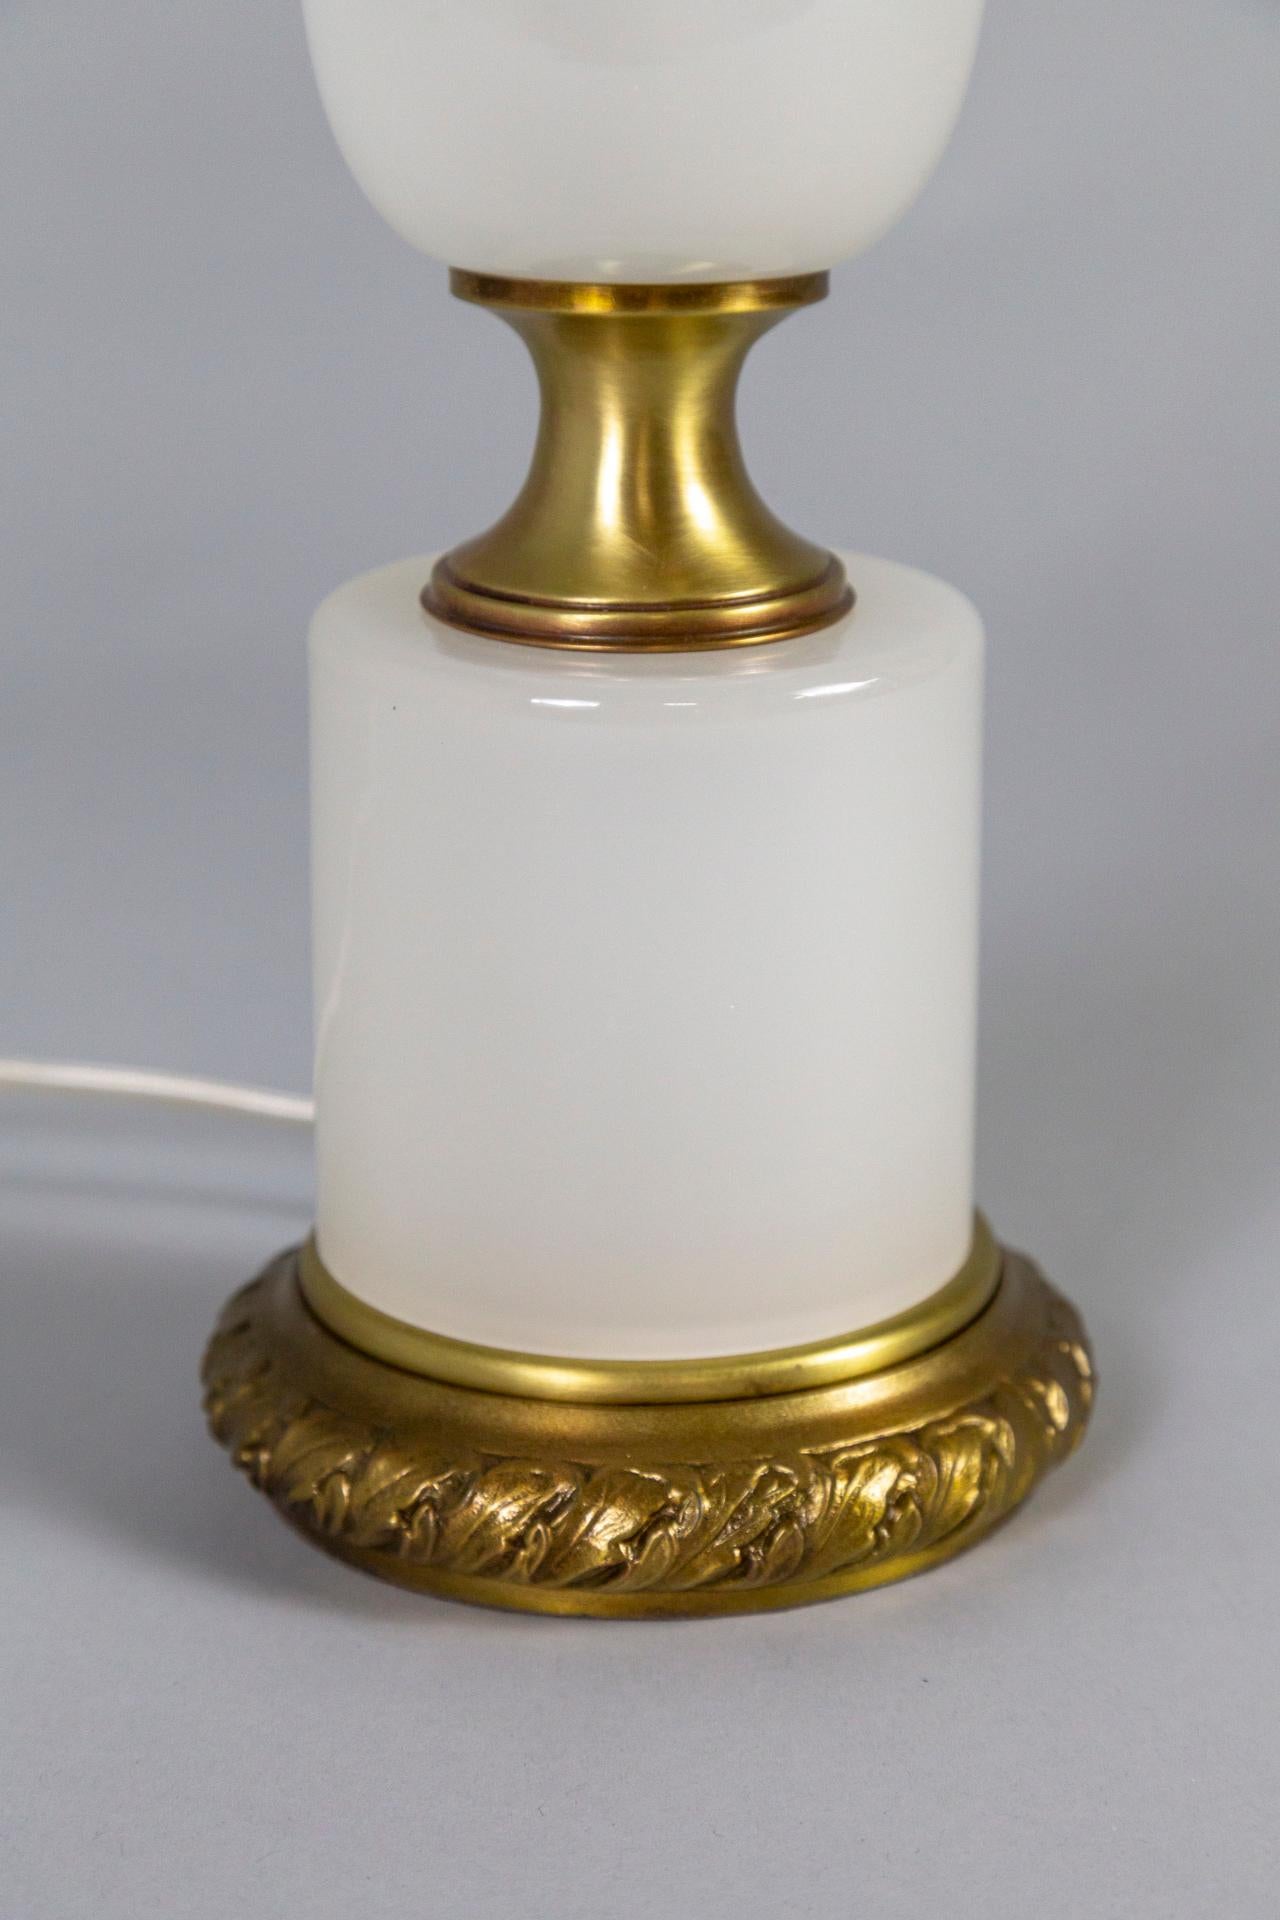 Une lampe de table avec un verre opalin qui a un aspect complexe, presque fumigène. Il a une forme élégante avec des accents en laiton - une base avec des détails de feuilles d'acanthe moulées. Fabriqué par Frederick Cooper design dans les années